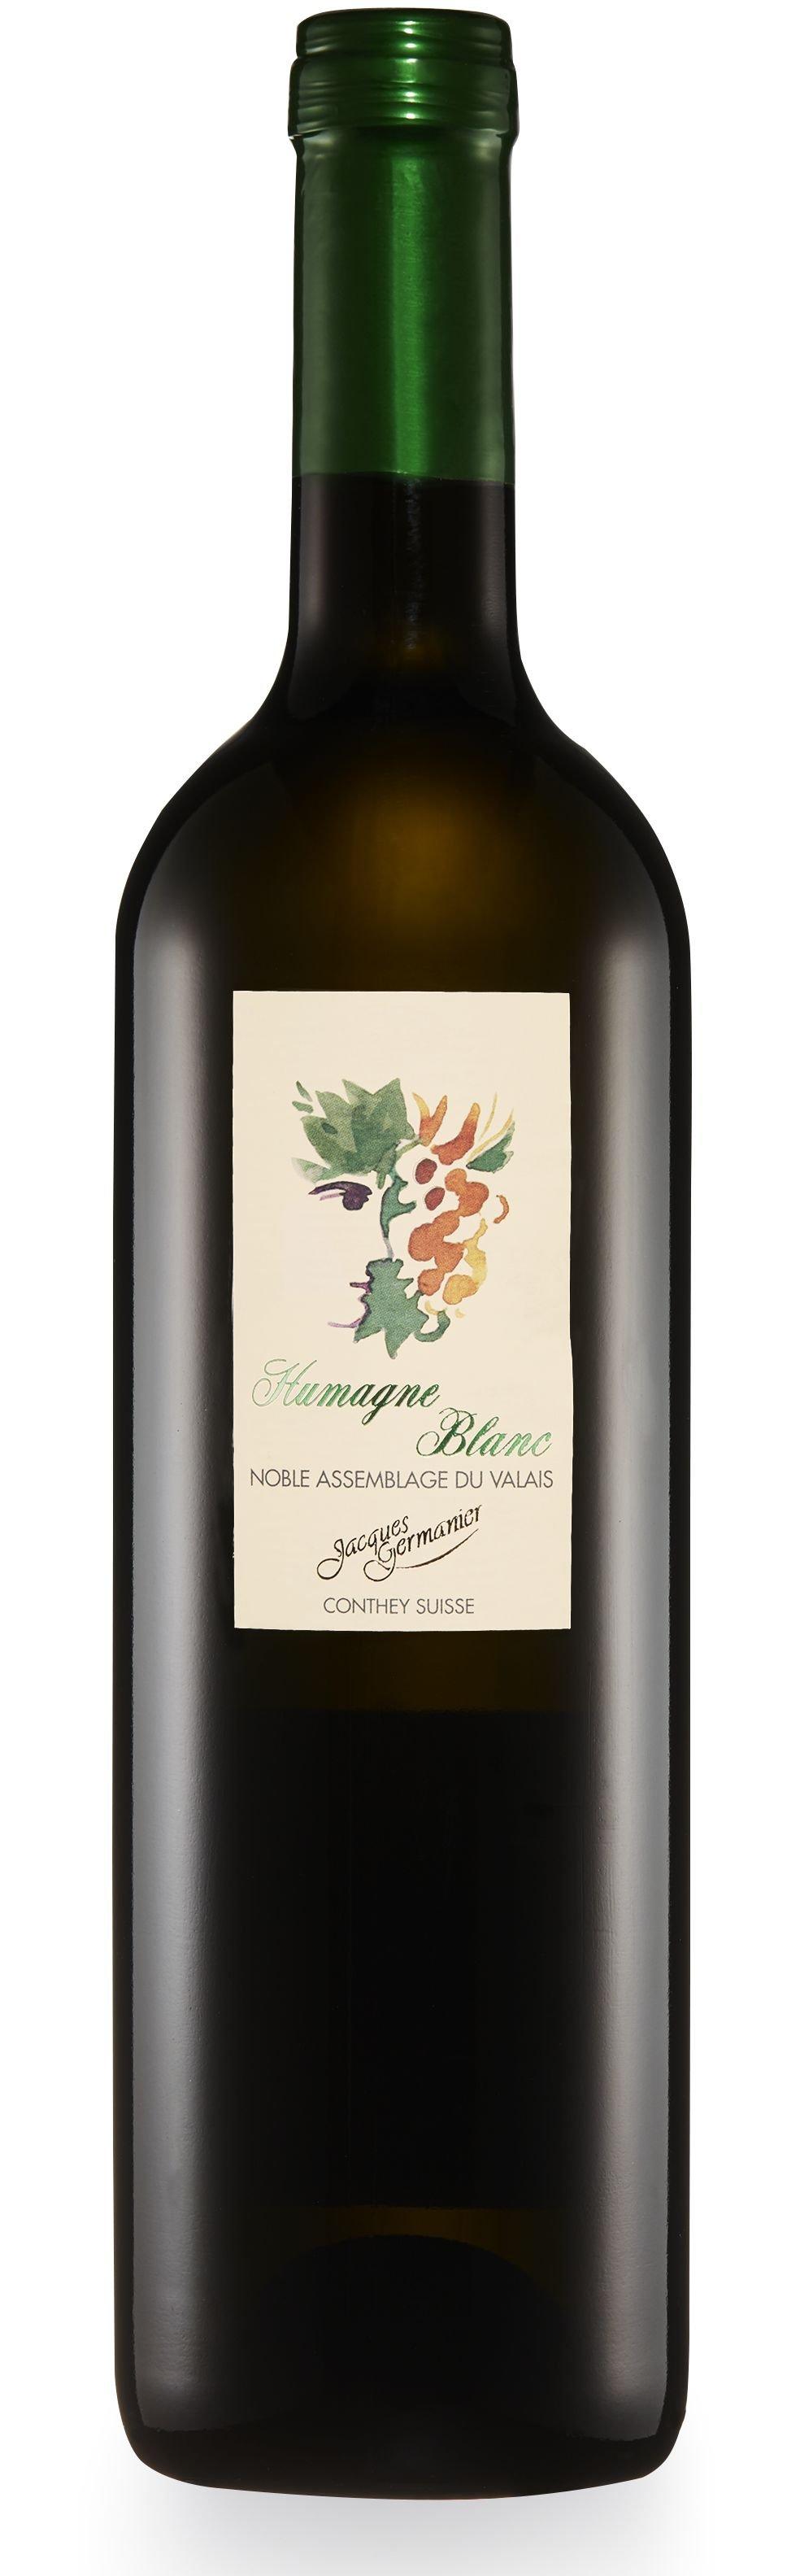 Image of Jacques Germanier 2019, Humagne Blanc Valais, Valais AOC - 75 cl